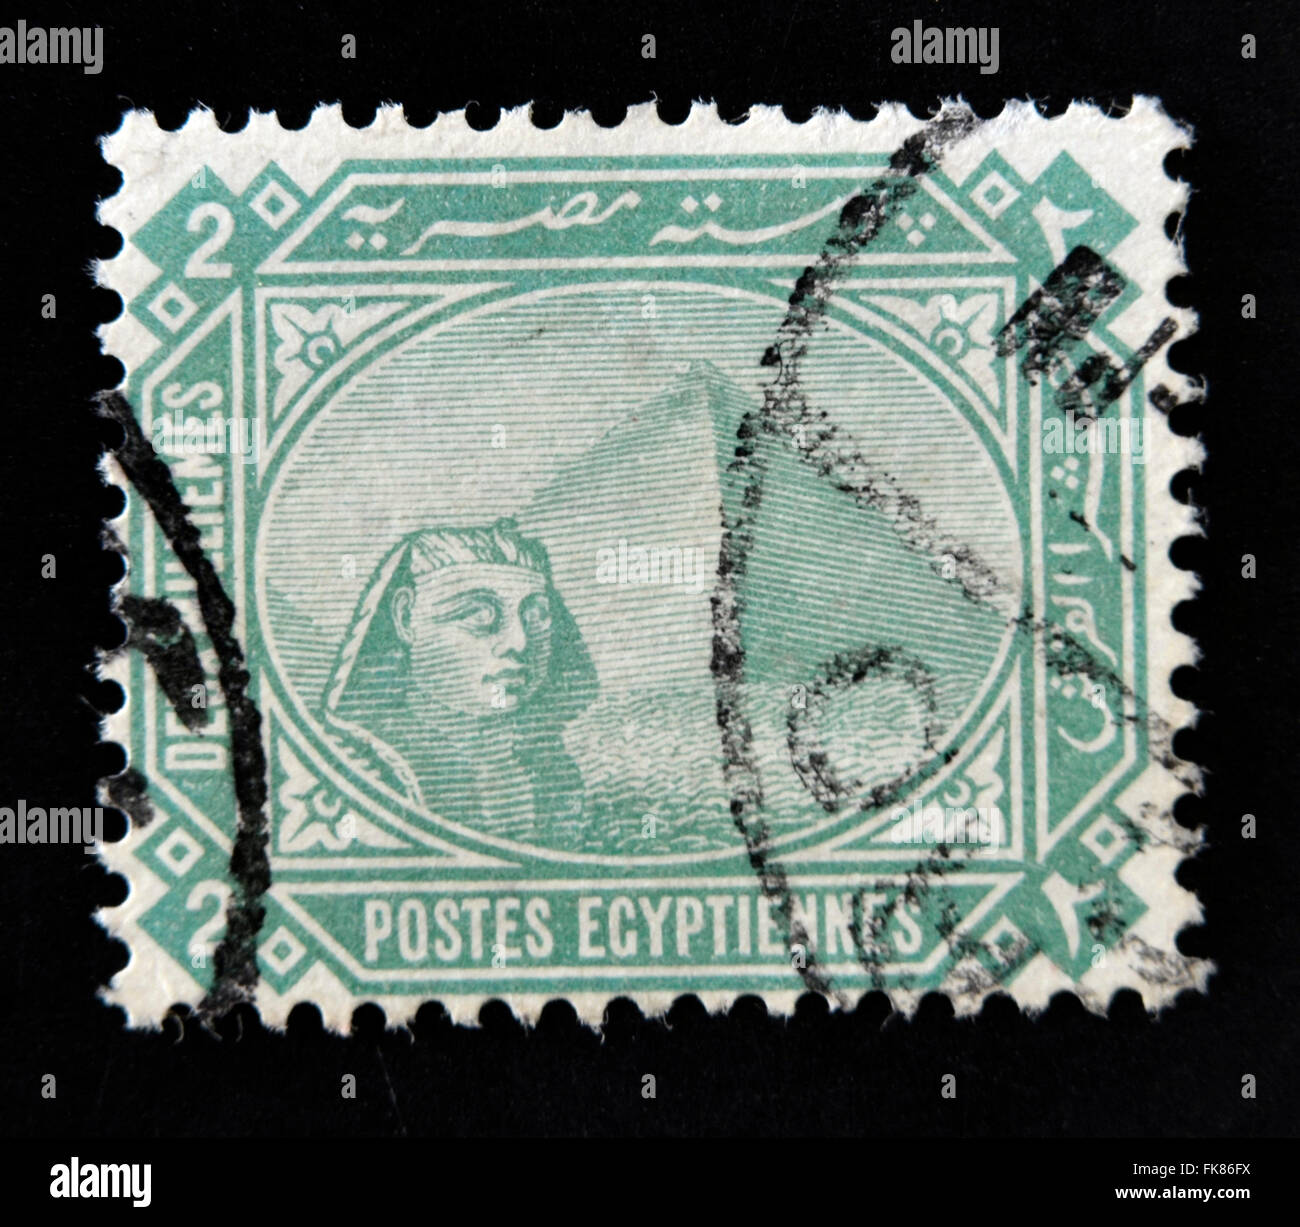 Égypte - circa 1888 : timbre imprimé en Egypte, montrant le Grand Sphinx et pyramide de Gizeh, vers 1888 Banque D'Images